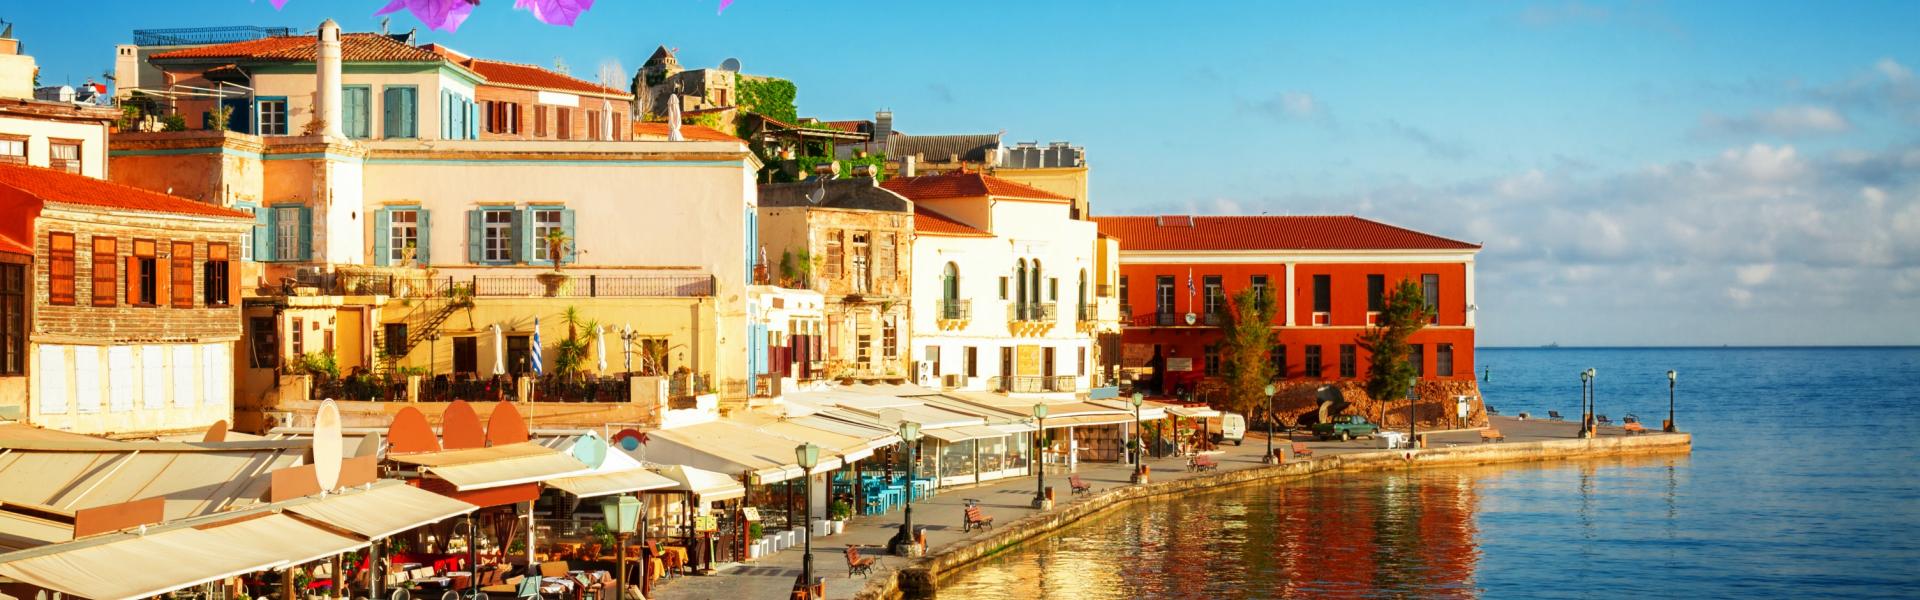 Ferienwohnungen & Ferienhäuser für Urlaub auf Kreta - Casamundo